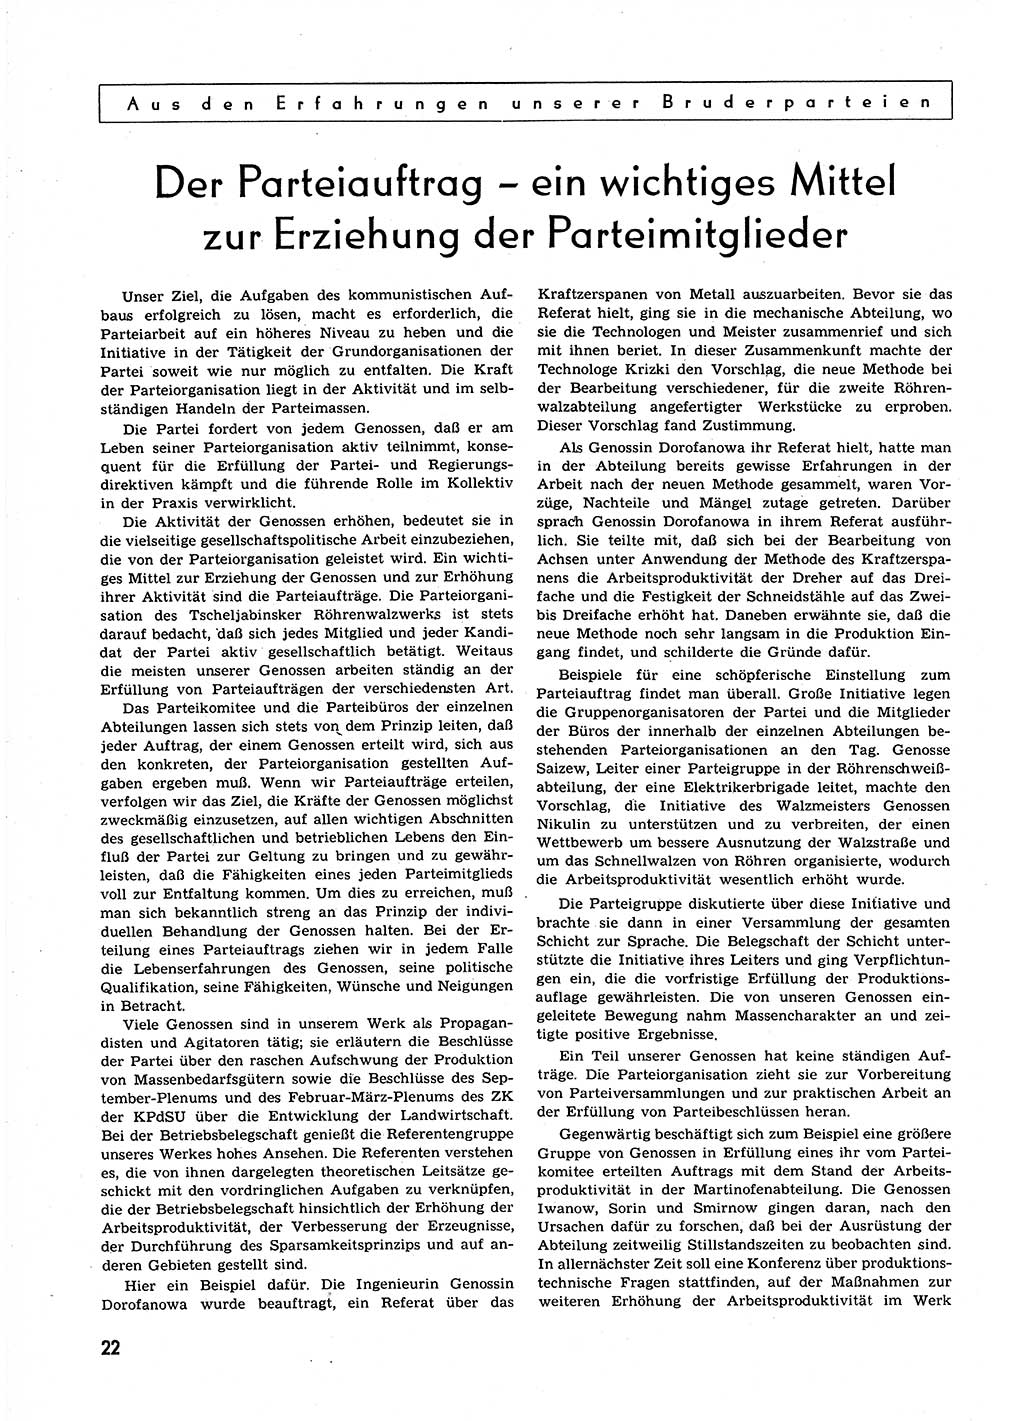 Neuer Weg (NW), Organ des Zentralkomitees (ZK) der SED (Sozialistische Einheitspartei Deutschlands) für alle Parteiarbeiter, 9. Jahrgang [Deutsche Demokratische Republik (DDR)] 1954, Heft 16/22 (NW ZK SED DDR 1954, H. 16/22)